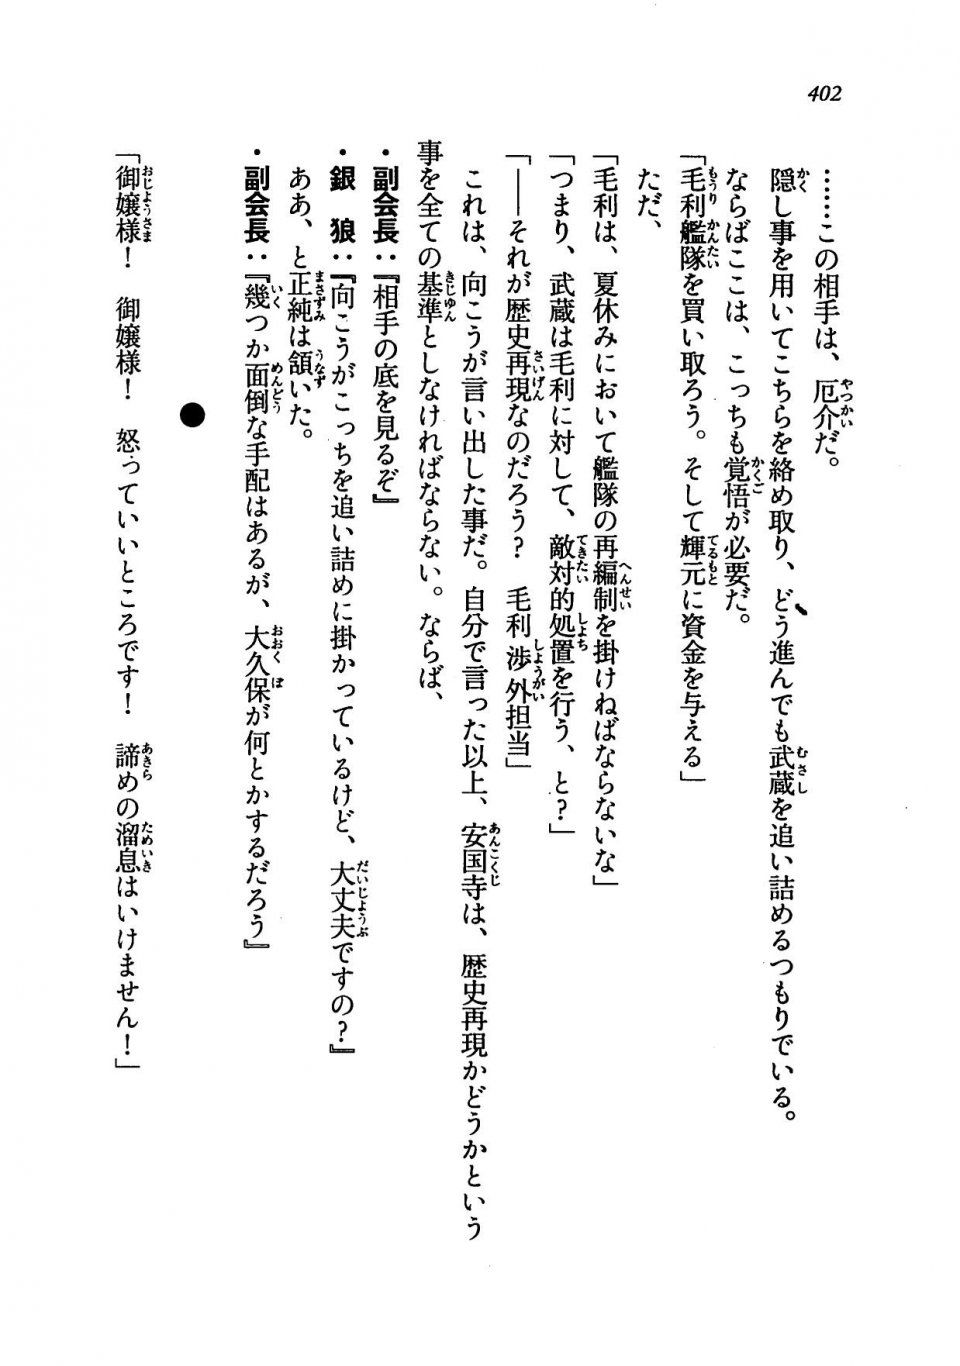 Kyoukai Senjou no Horizon LN Vol 19(8A) - Photo #402